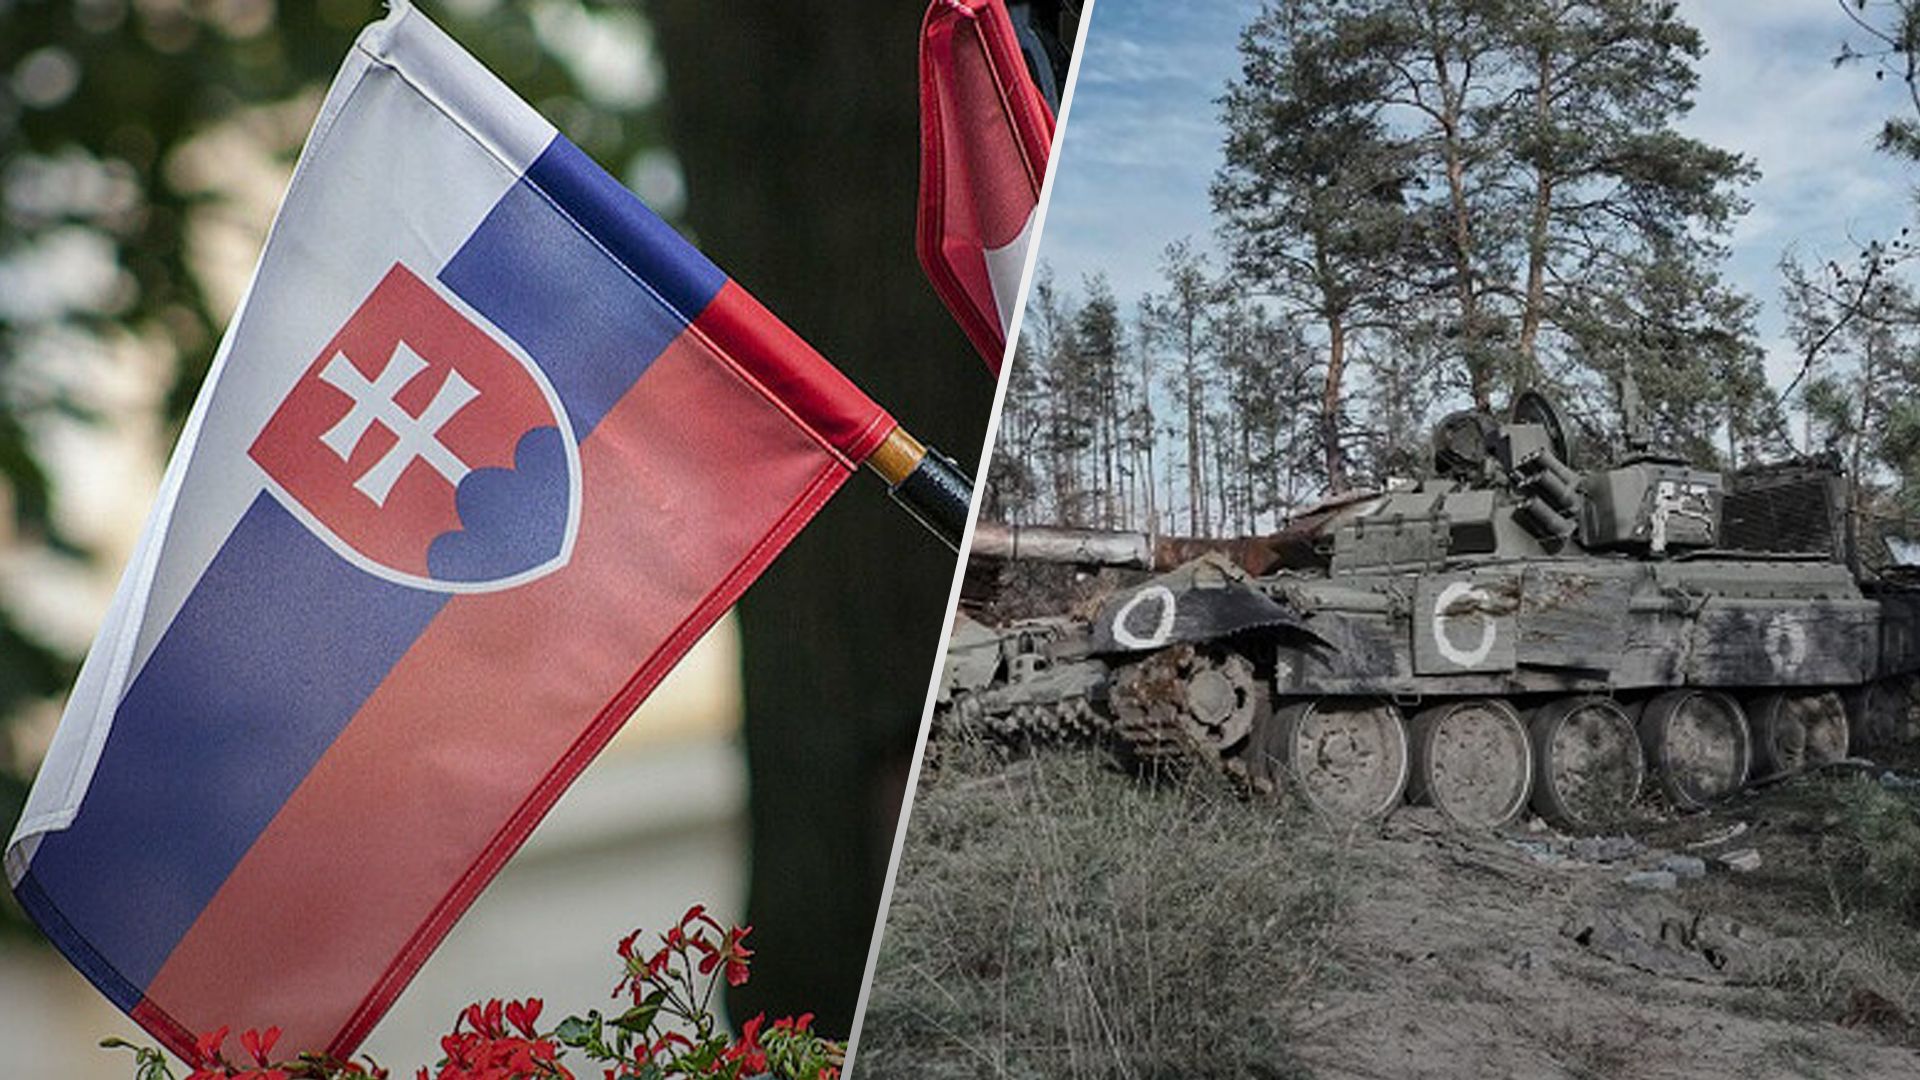 Словацькі компанії могли постачати Росії деталі до військової техніки 